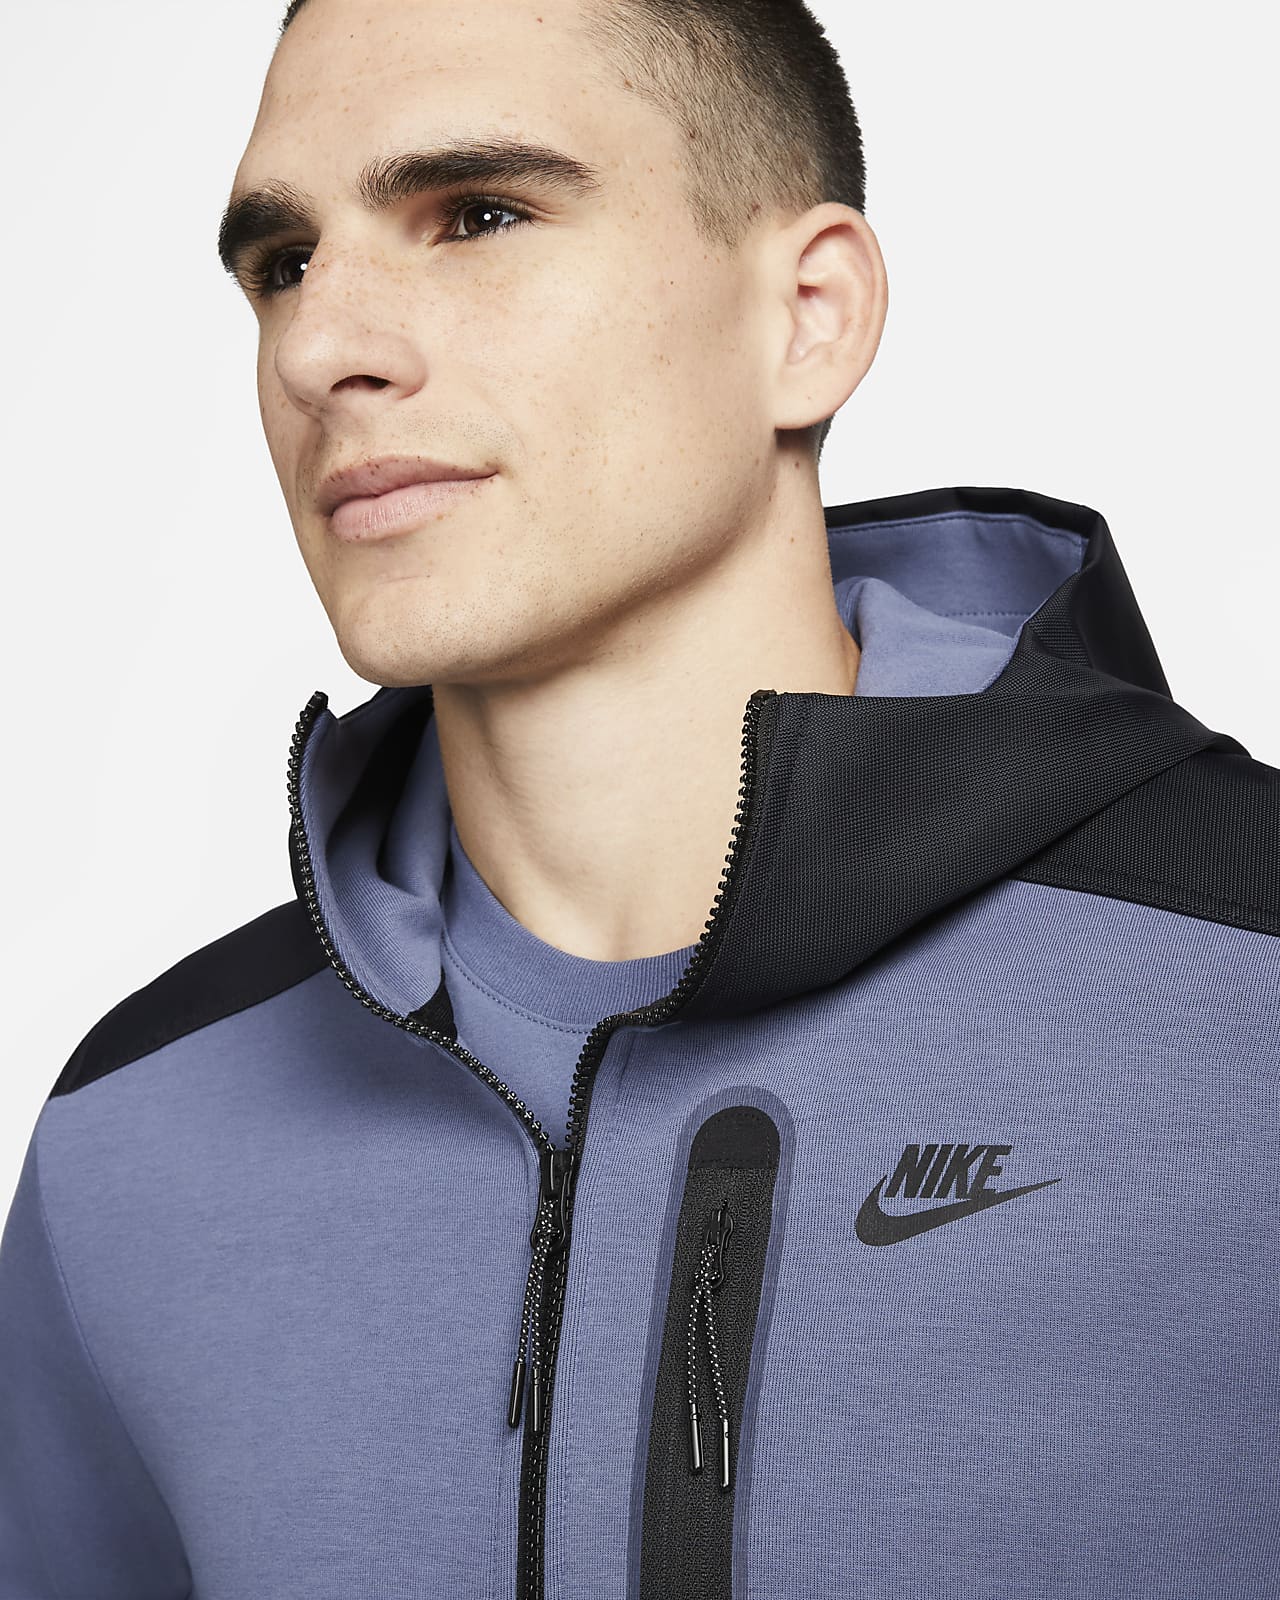 Men's Sportswear Clothing. Nike HR